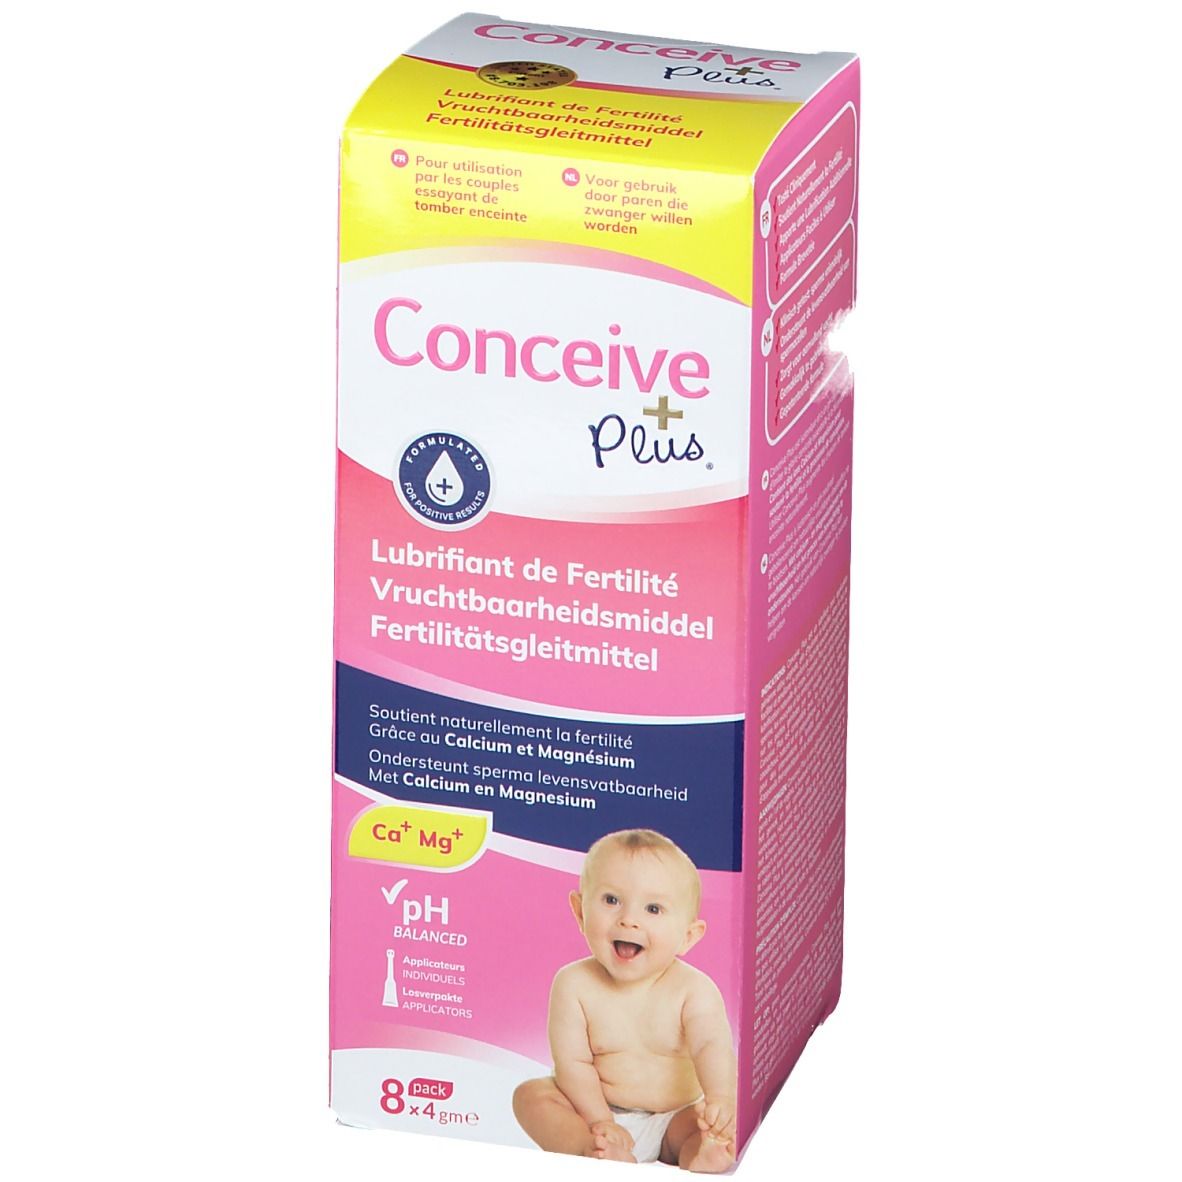 Conceive Plus® Fertility Lubricant de fertilité